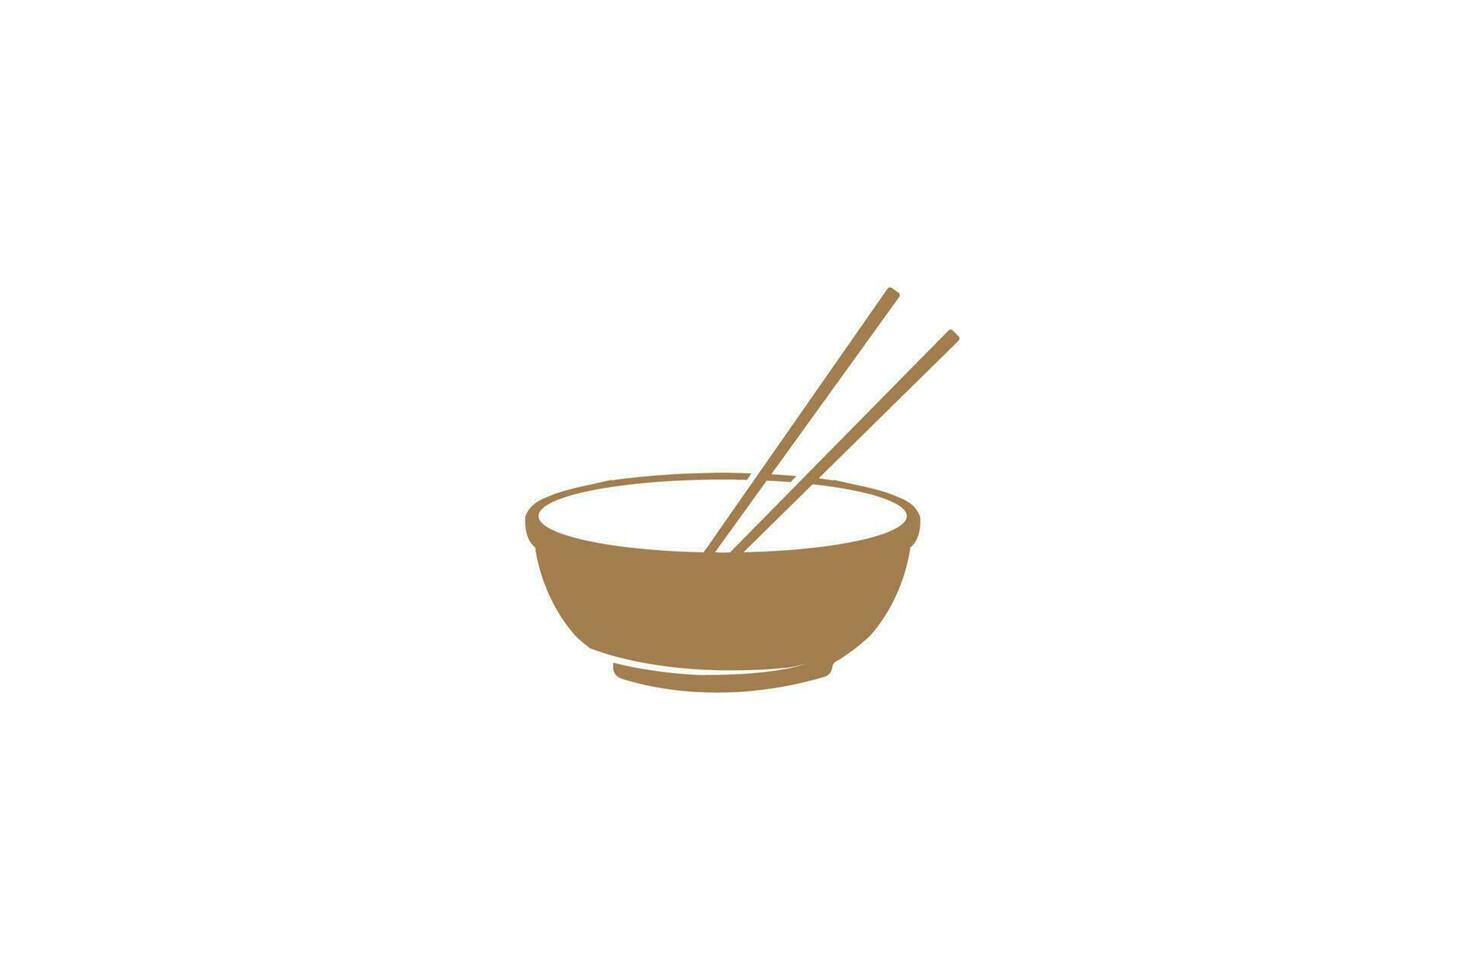 Schüssel mit Essstäbchen für asiatisch-orientalisch-japanisch-koreanisches chinesisches Essen-Restaurant-Logo-Design-Vektor vektor